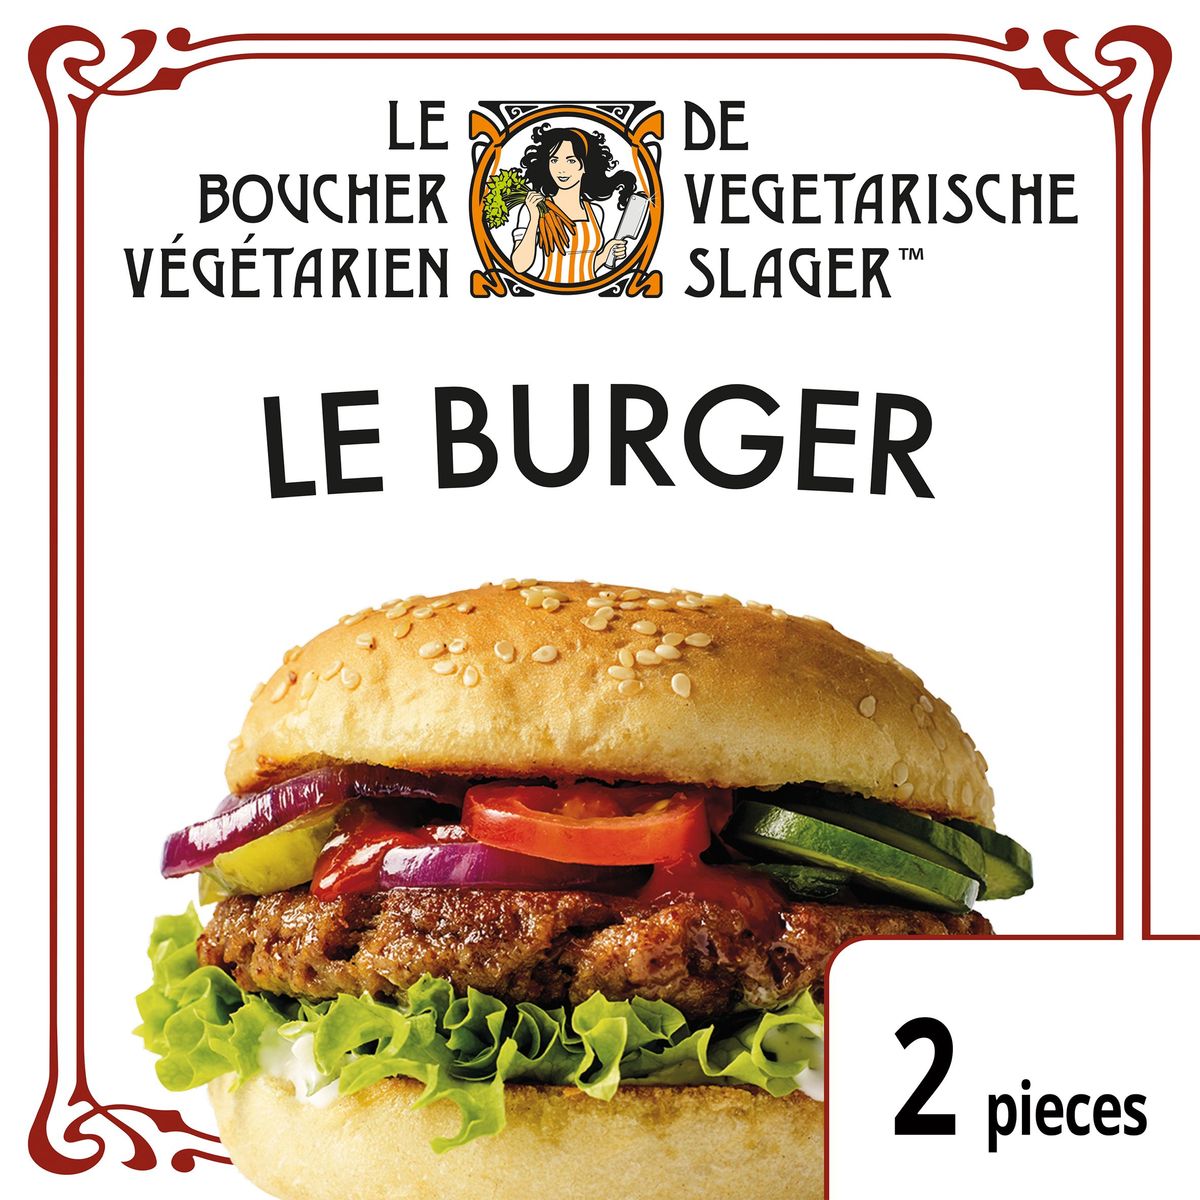 De Vegetarische Slager Vegetarische burger Le Burger 160 g